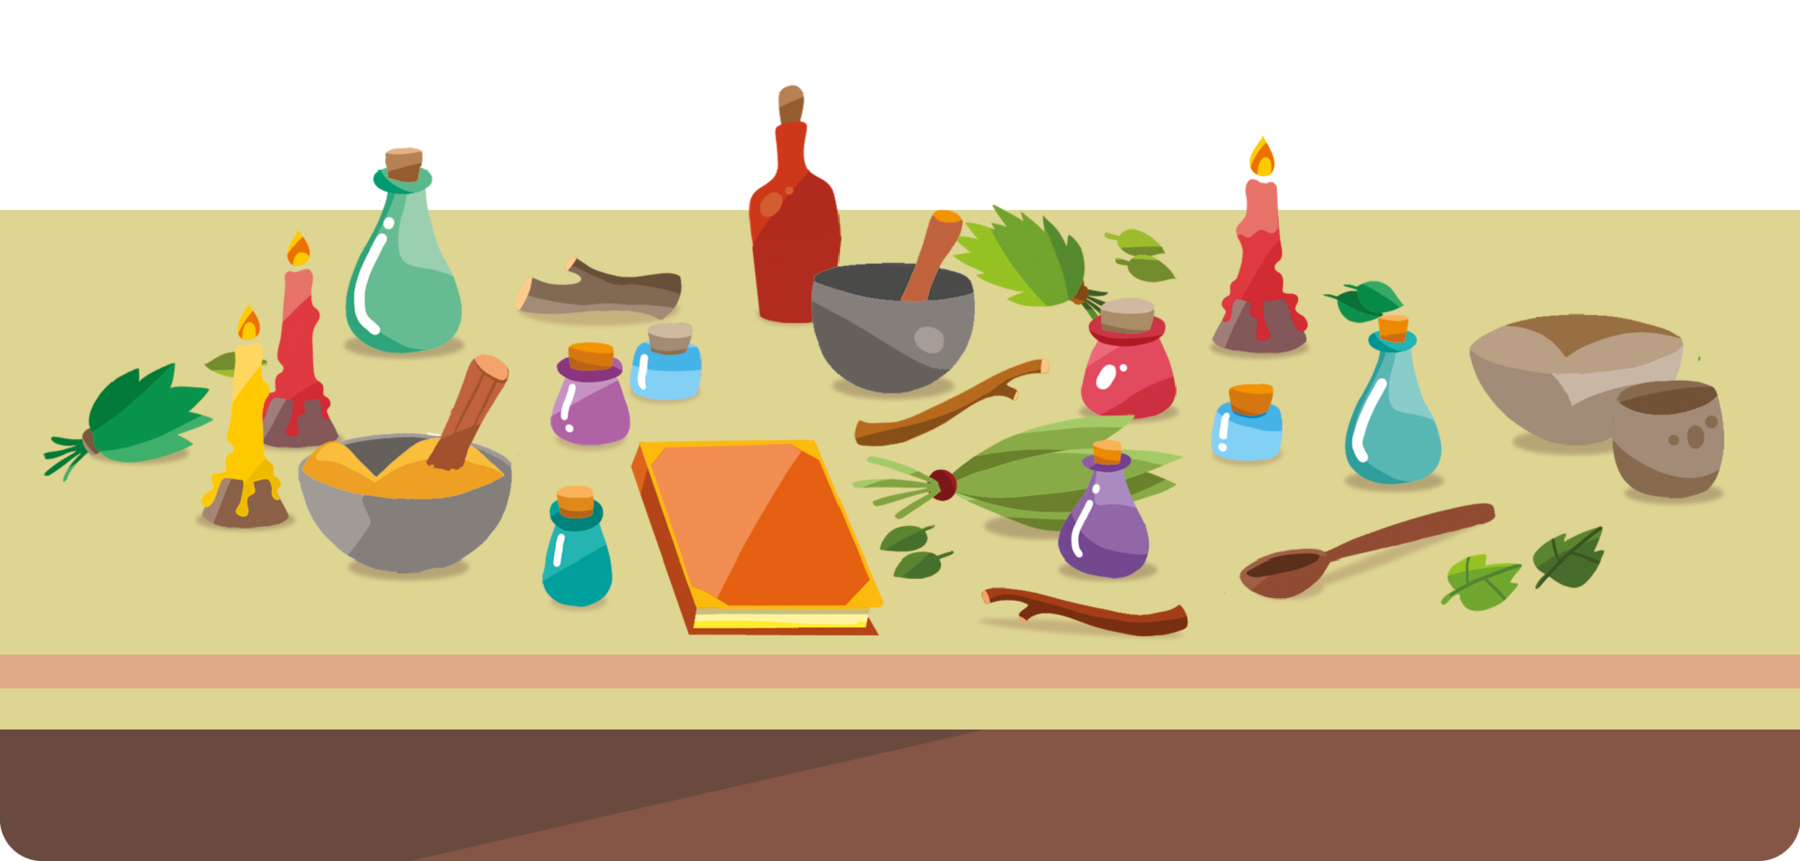 Ilustração. Sobre uma mesa, vários objetos, como velas coloridas, frascos de vidro de tamanhos, formas e cores diferentes, um livro, gravetos, talheres, tigelas e ramos de folhagens.